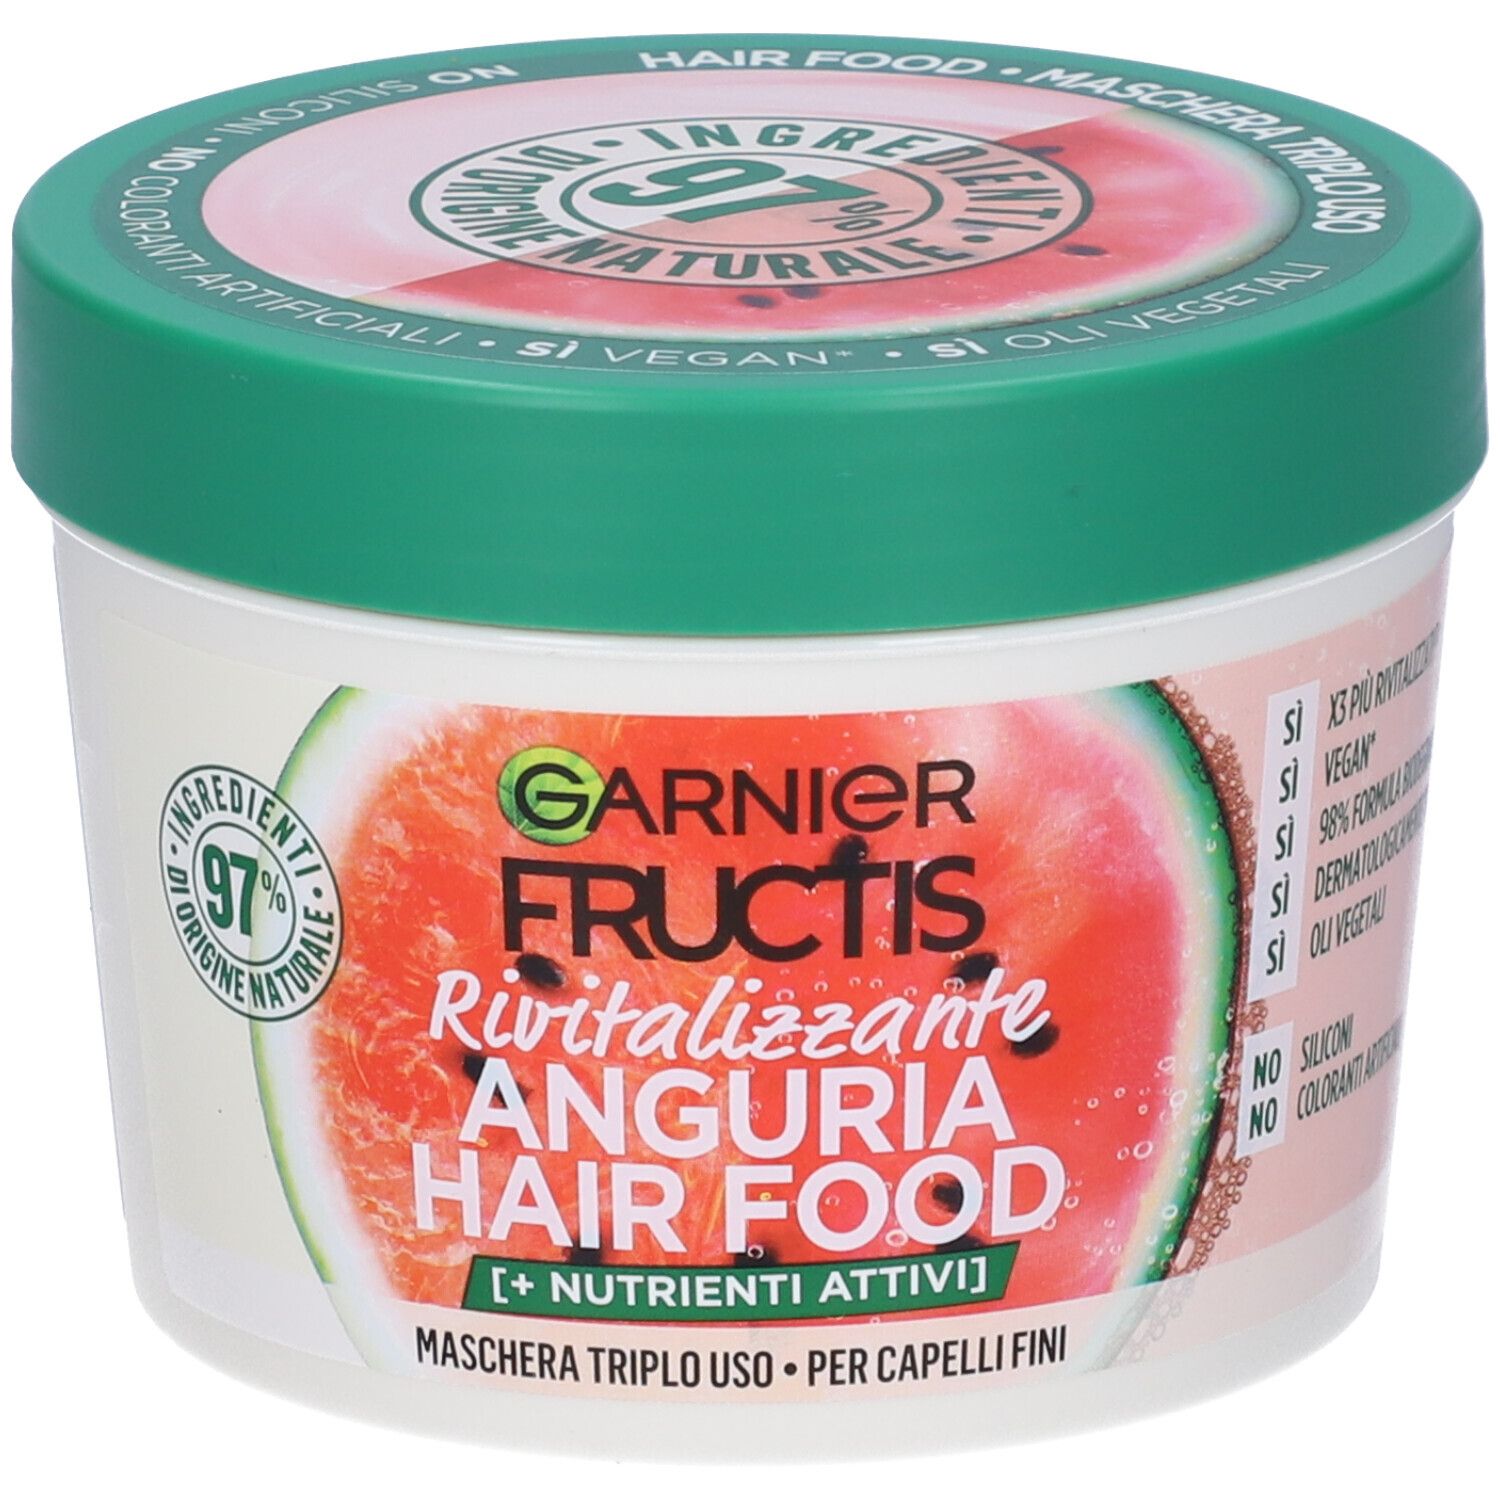 Image of Garnier Fructis Hair Food Anguria Rivitalizzante, Maschera 3-in-1 per Capelli Fini, Balsamo, Maschera e Trattamento senza Risciacquo, 97% di Ingredienti di Origine Naturale, Senza Siliconi